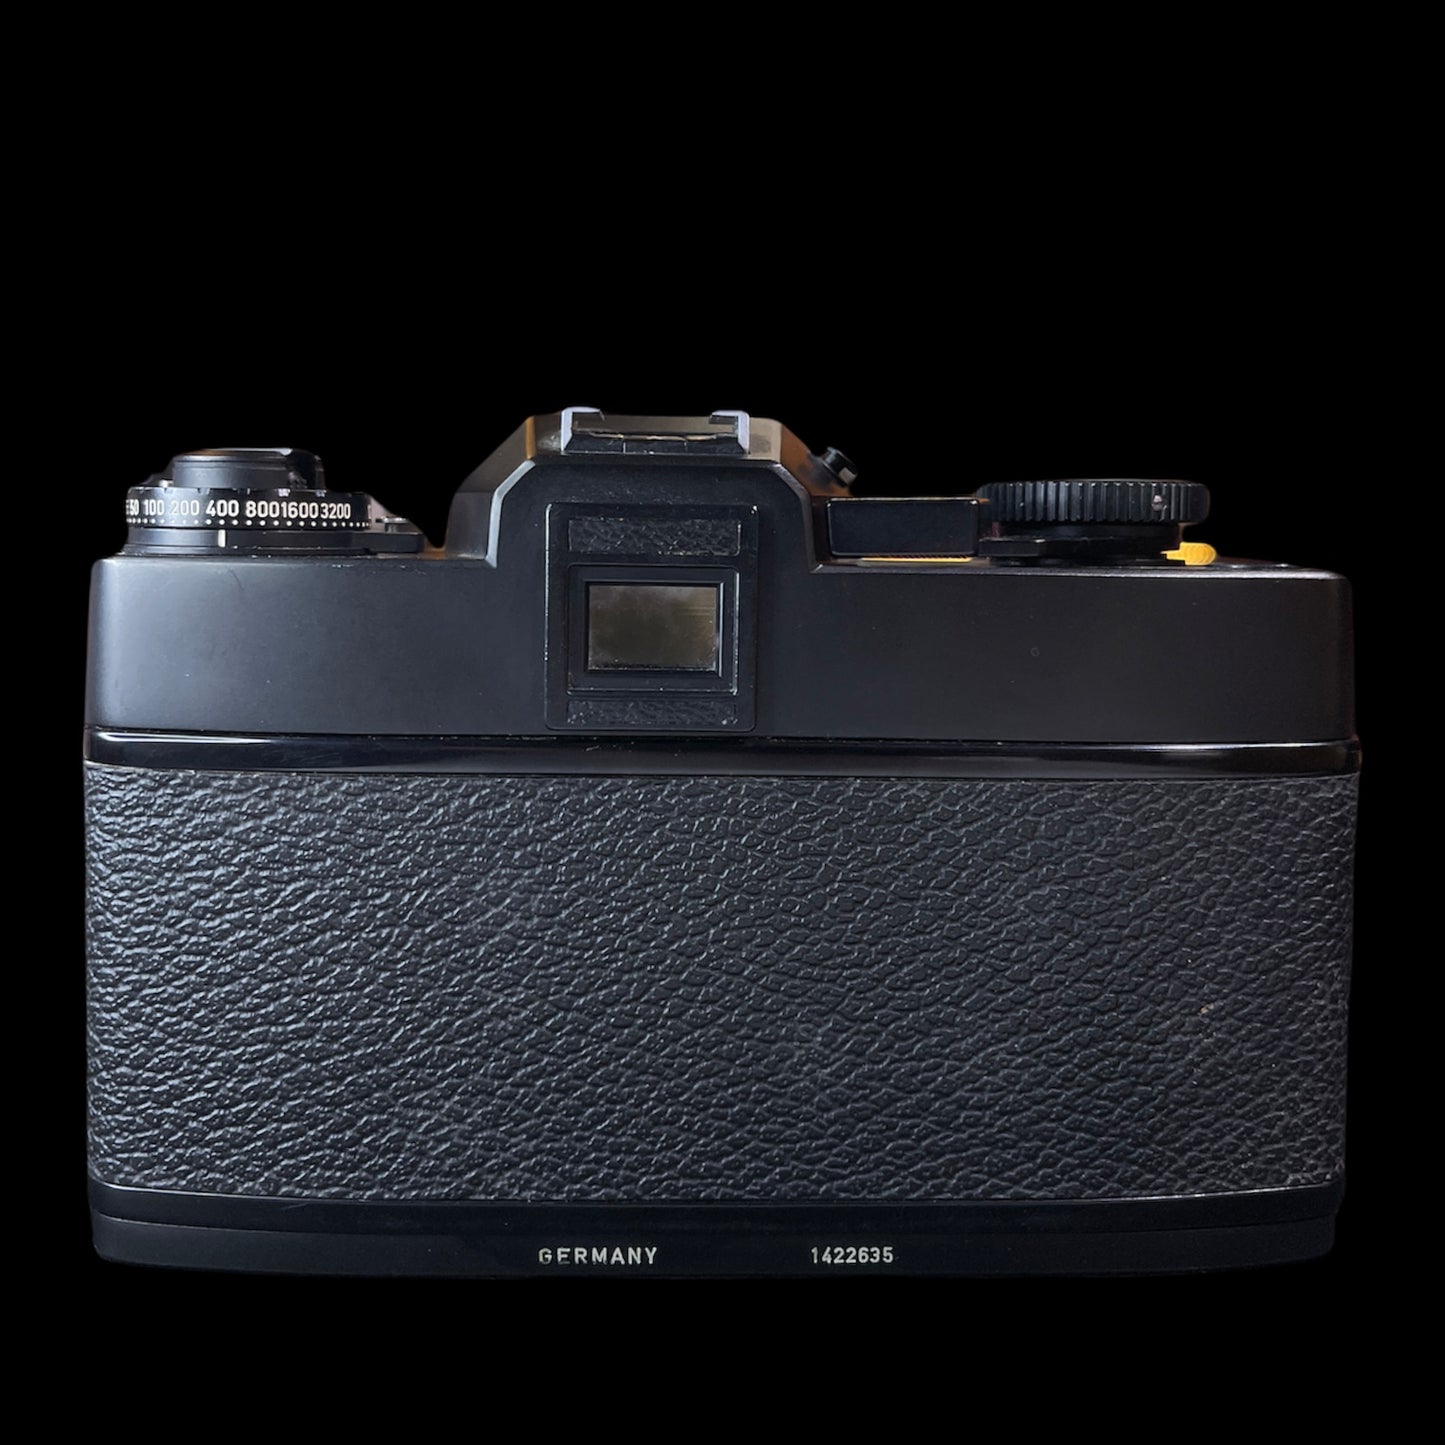 Leicaflex SL2 Black B#1422635